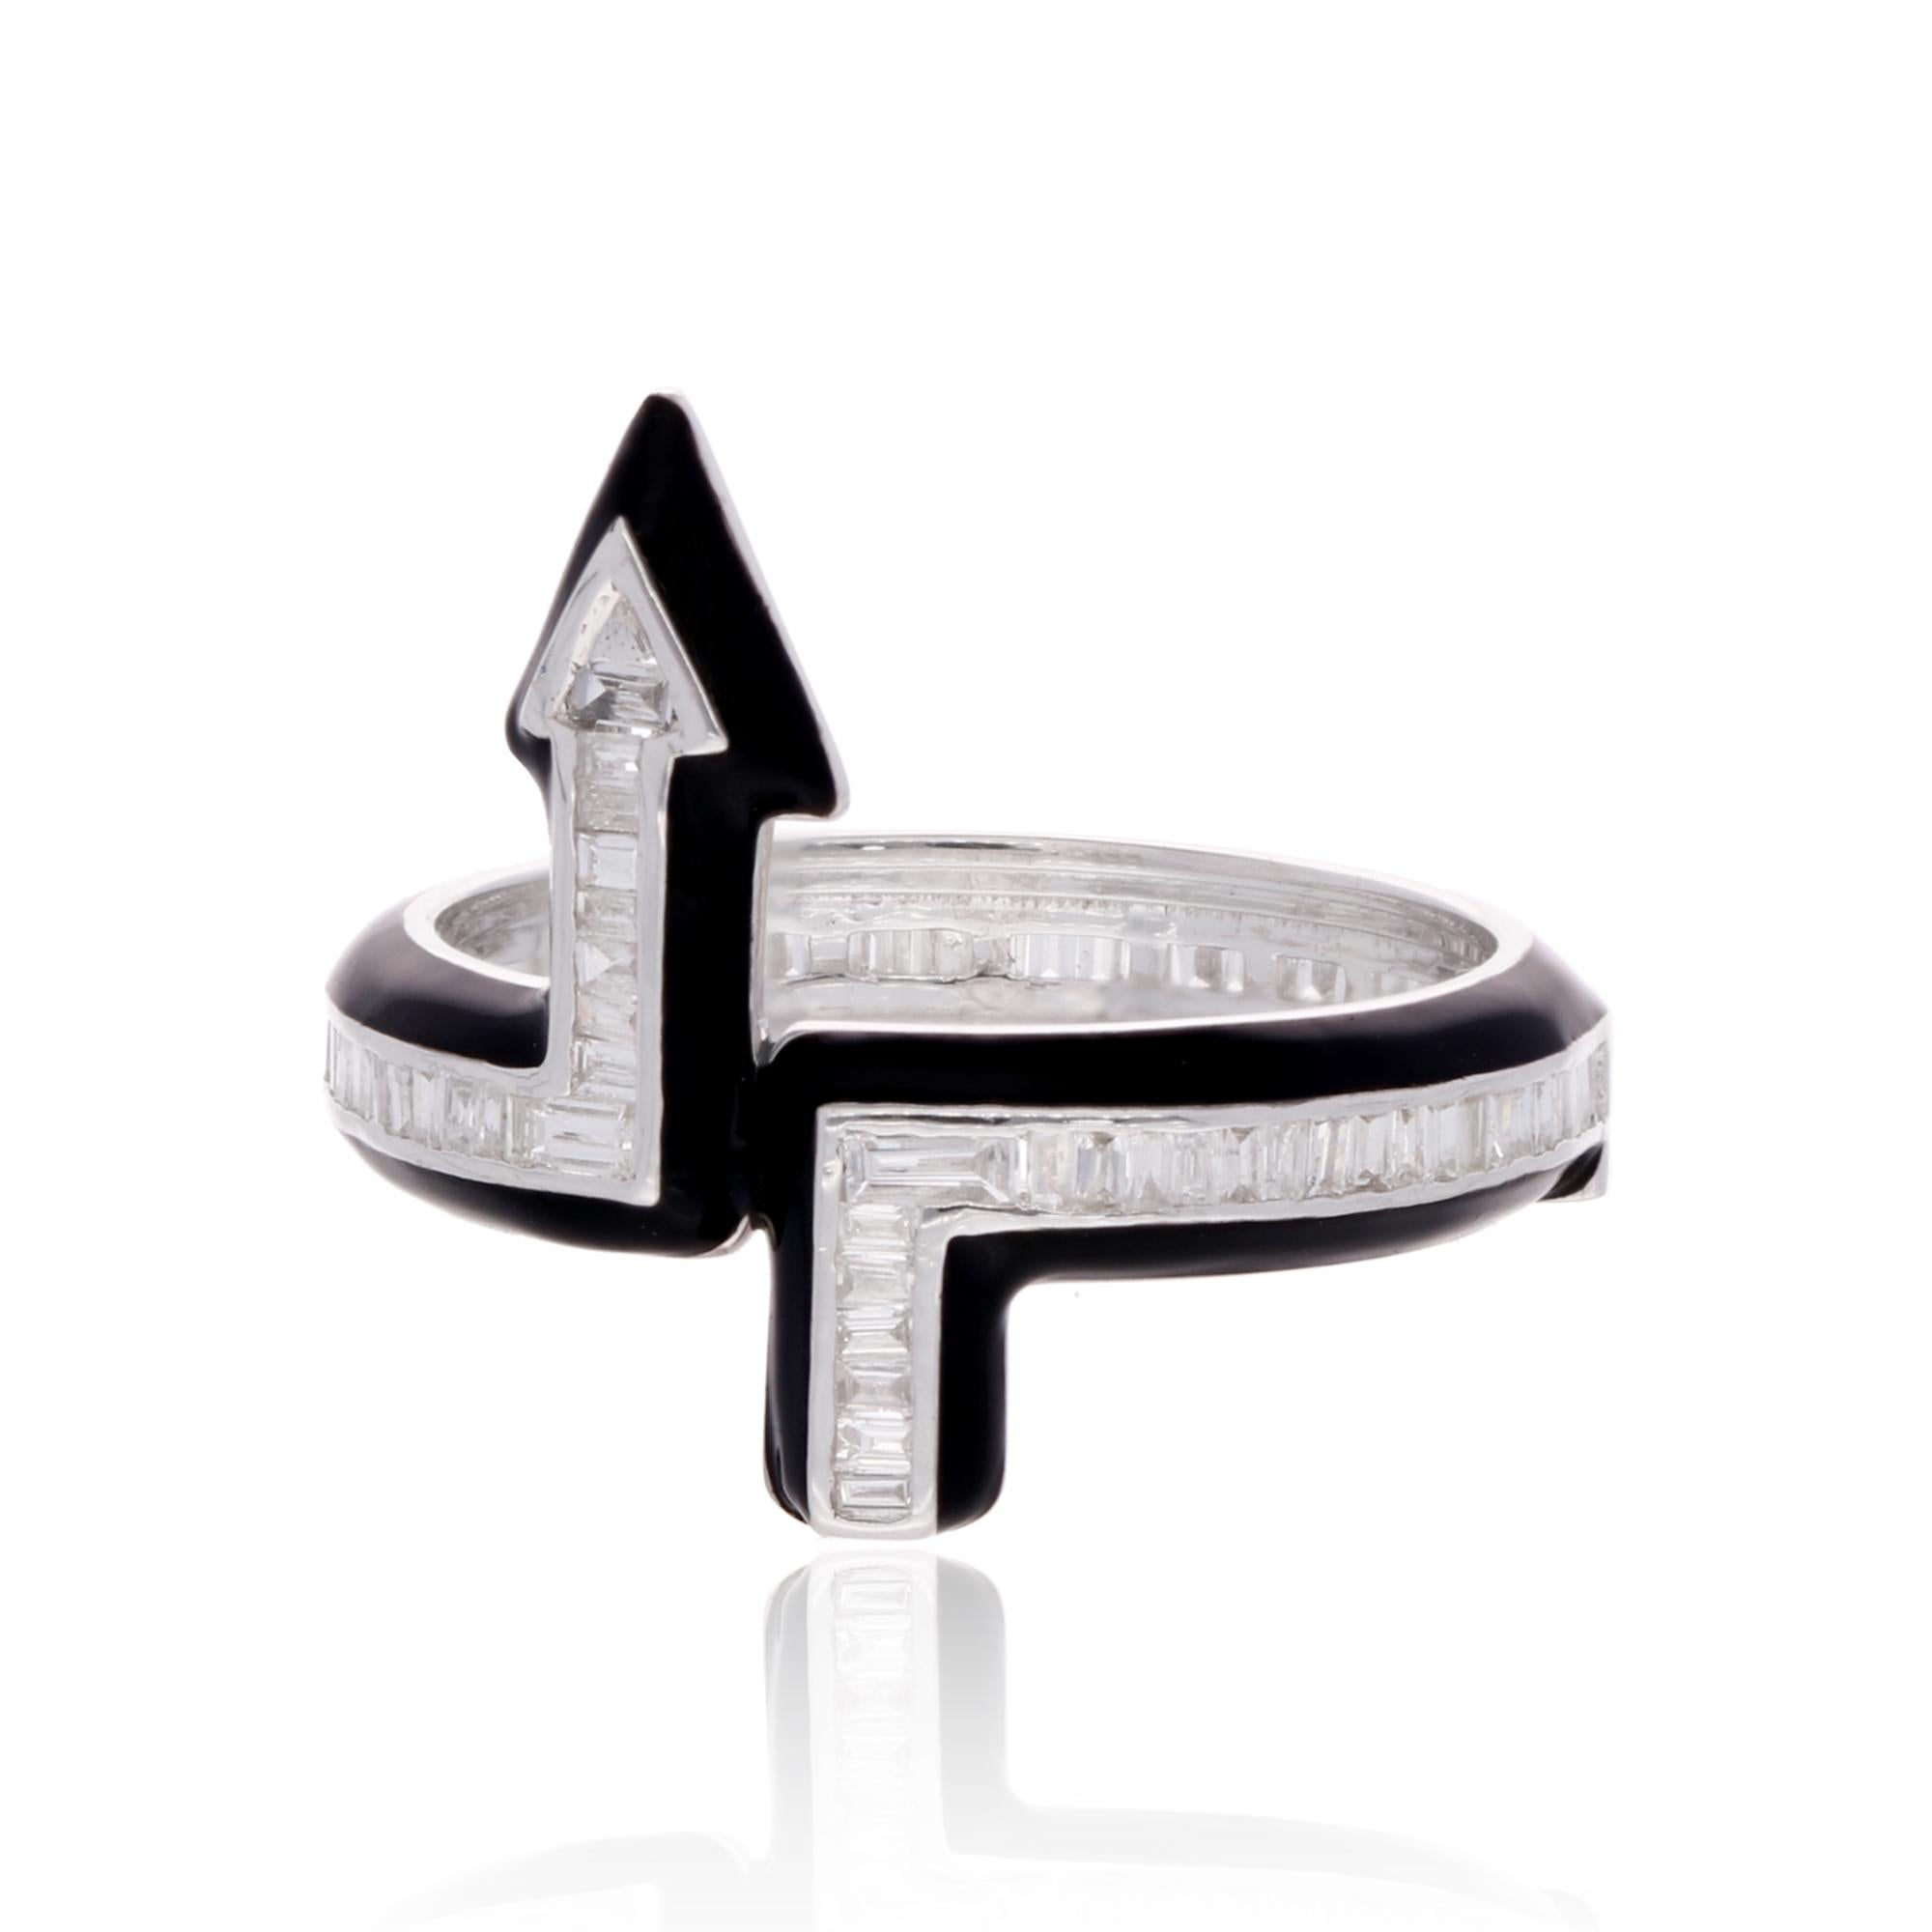 Der 1/2 Karat Baguette Diamond Arrow Ring aus 18 Karat Weißgold mit feiner schwarzer Emaille ist ein stilvolles und elegantes Schmuckstück. Das Pfeildesign, ergänzt durch die Diamanten im Baguetteschliff und die Emaille-Akzente, verleiht dem